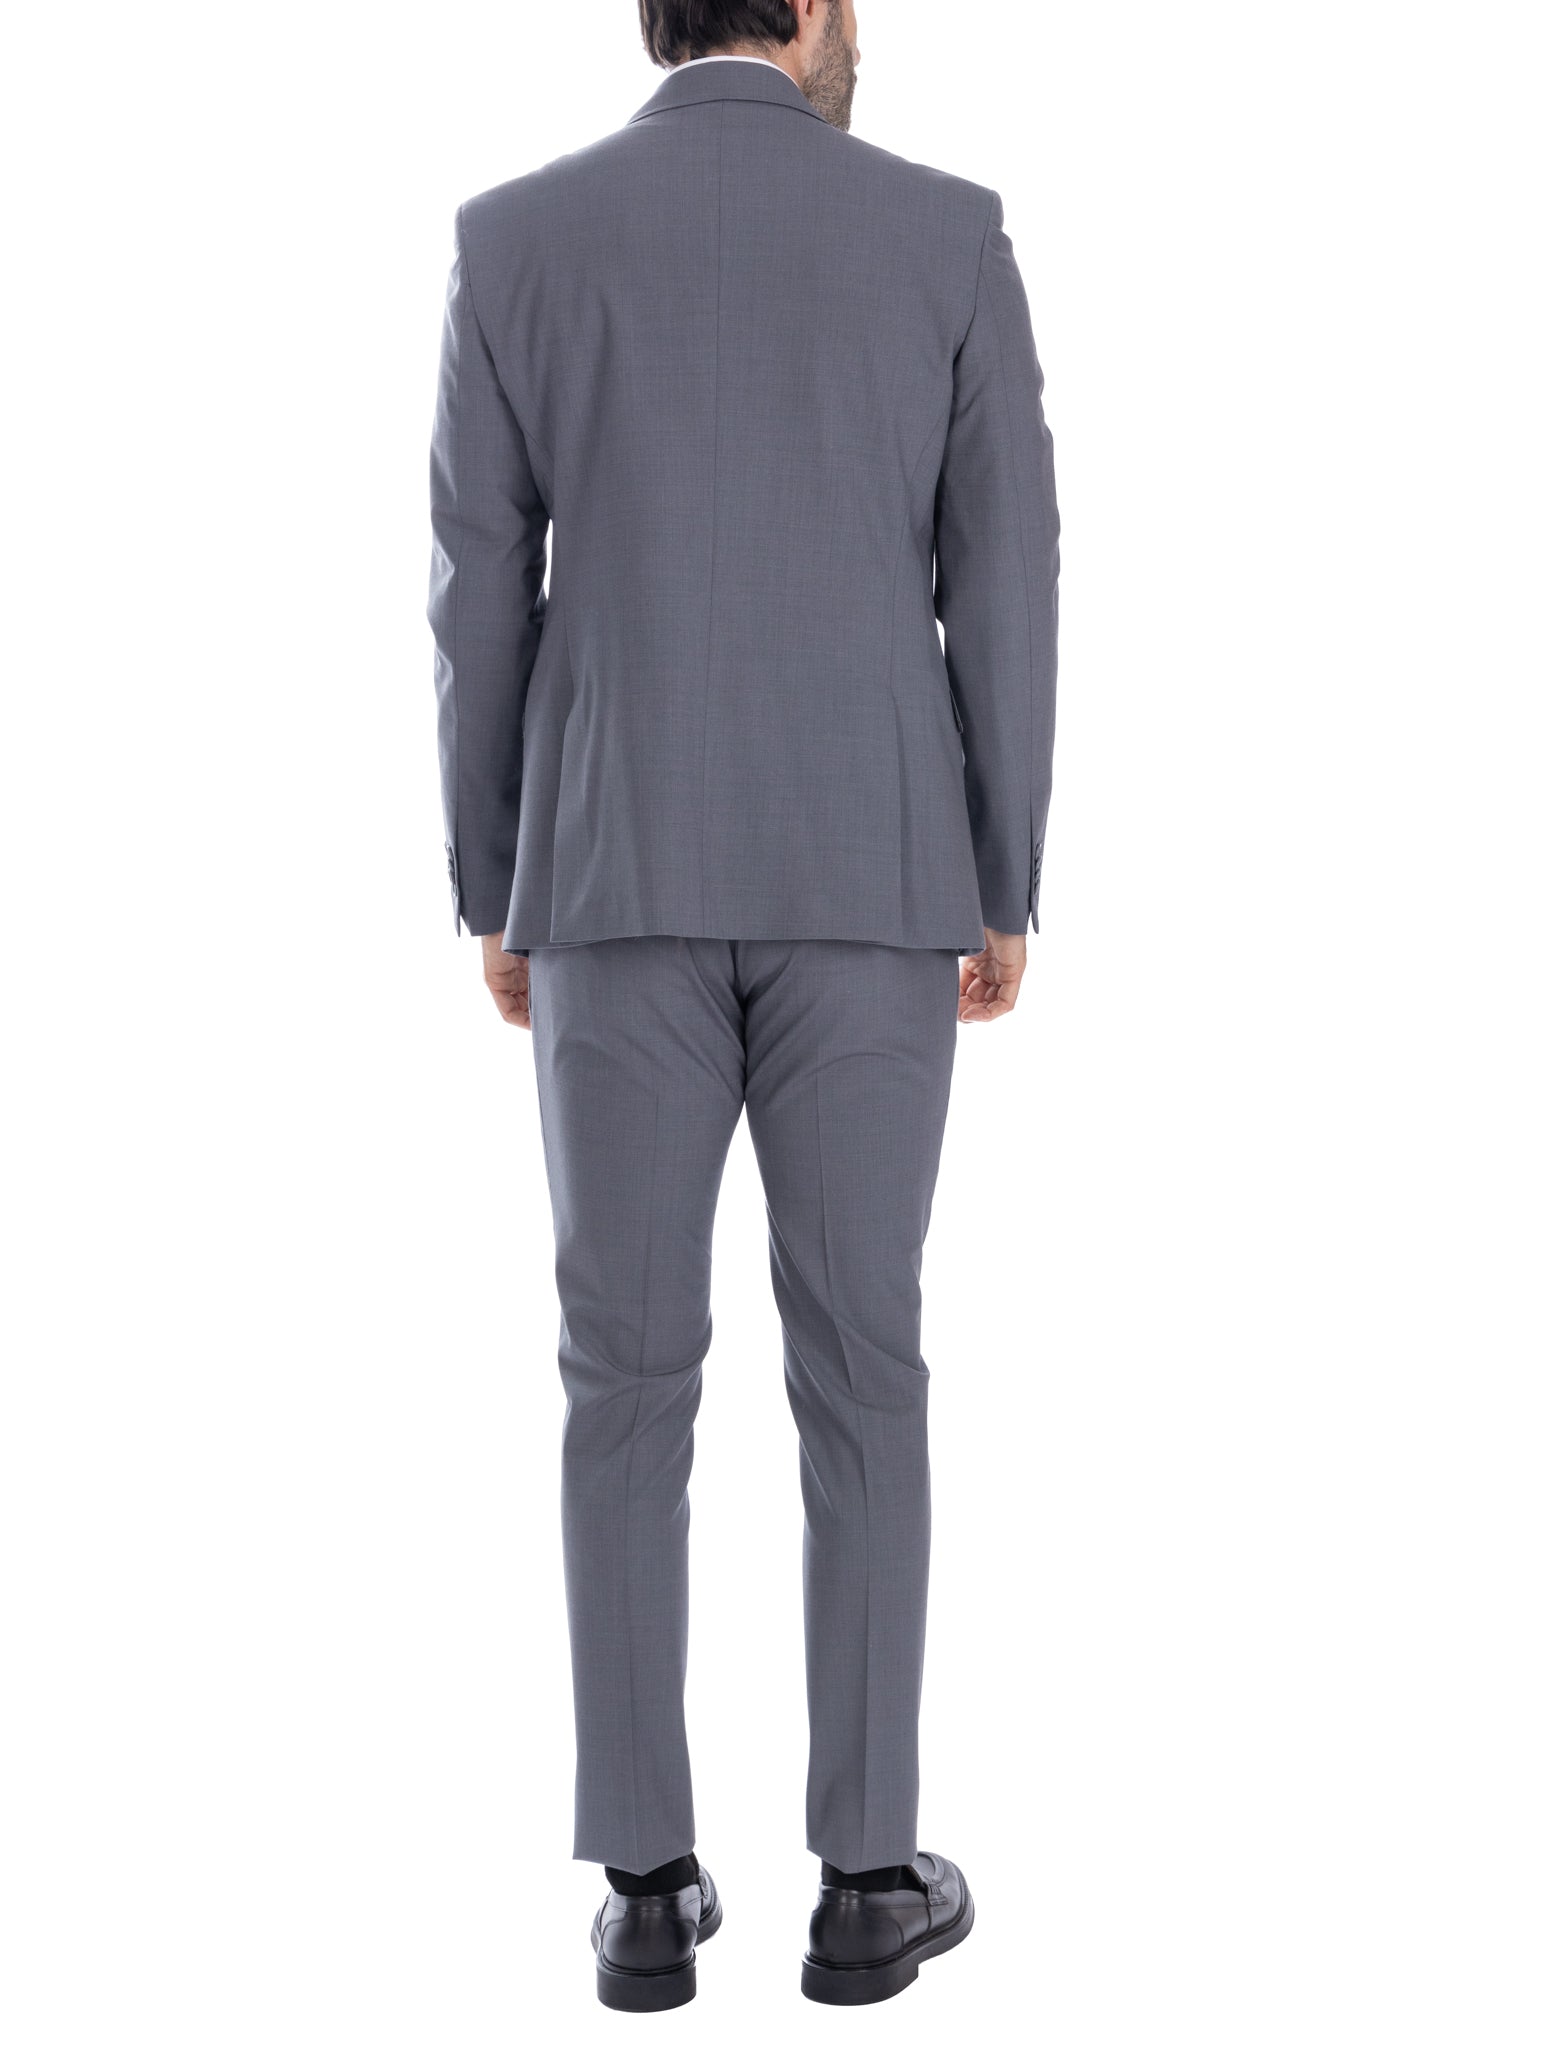 New york - abito monopetto grigio in lana